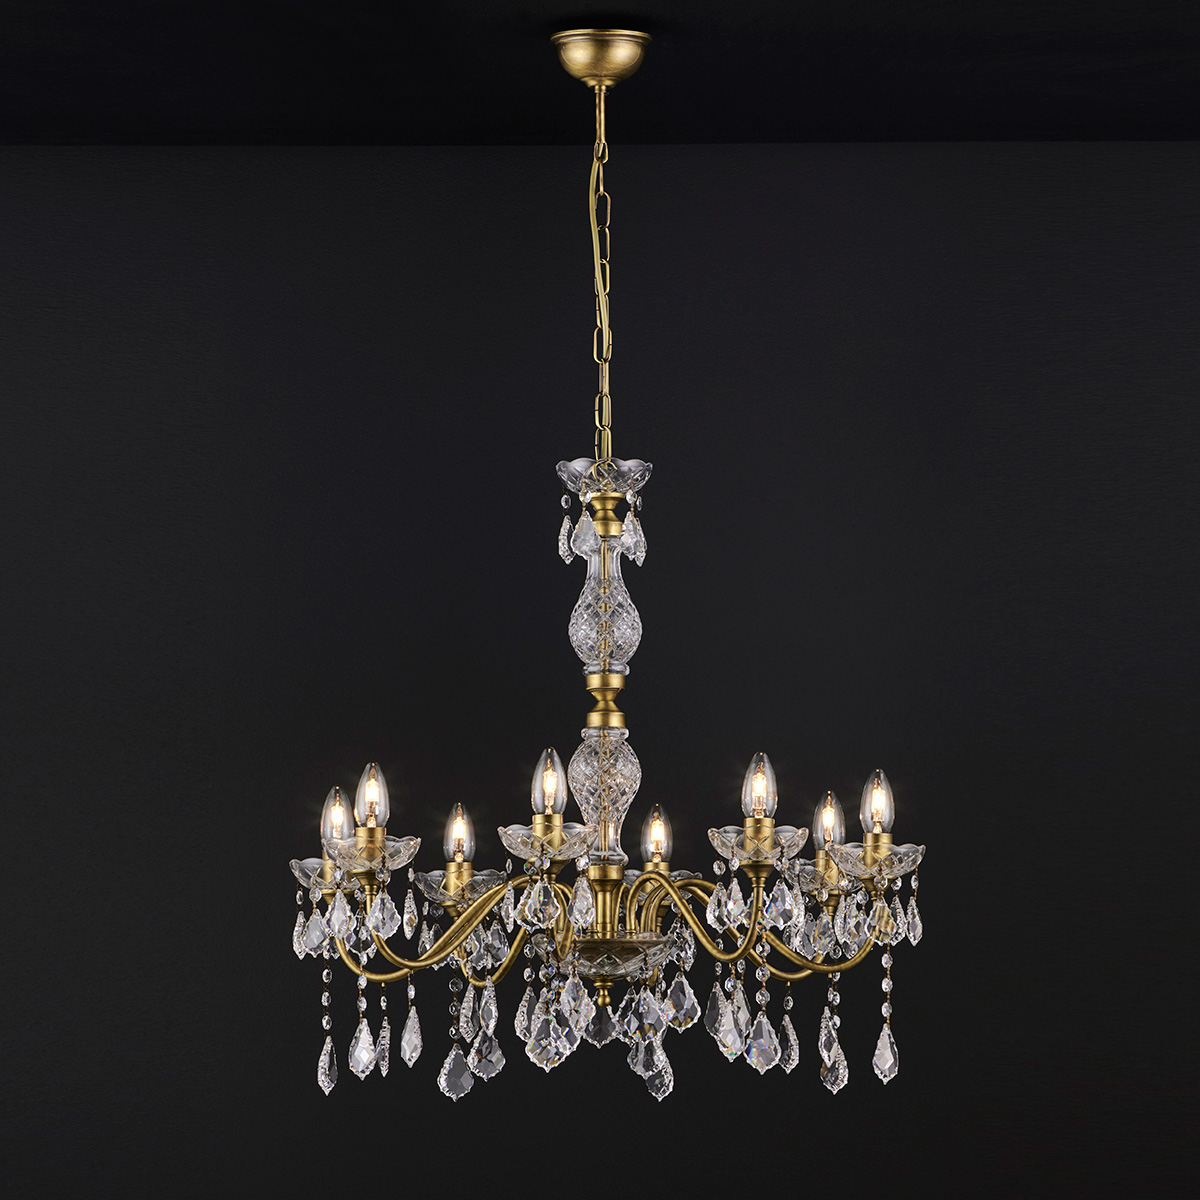 Κλασικό 8φωτο φωτιστικό με κρύσταλλα ΔΙΟΝ classic 8-bulb chandelier with crystals